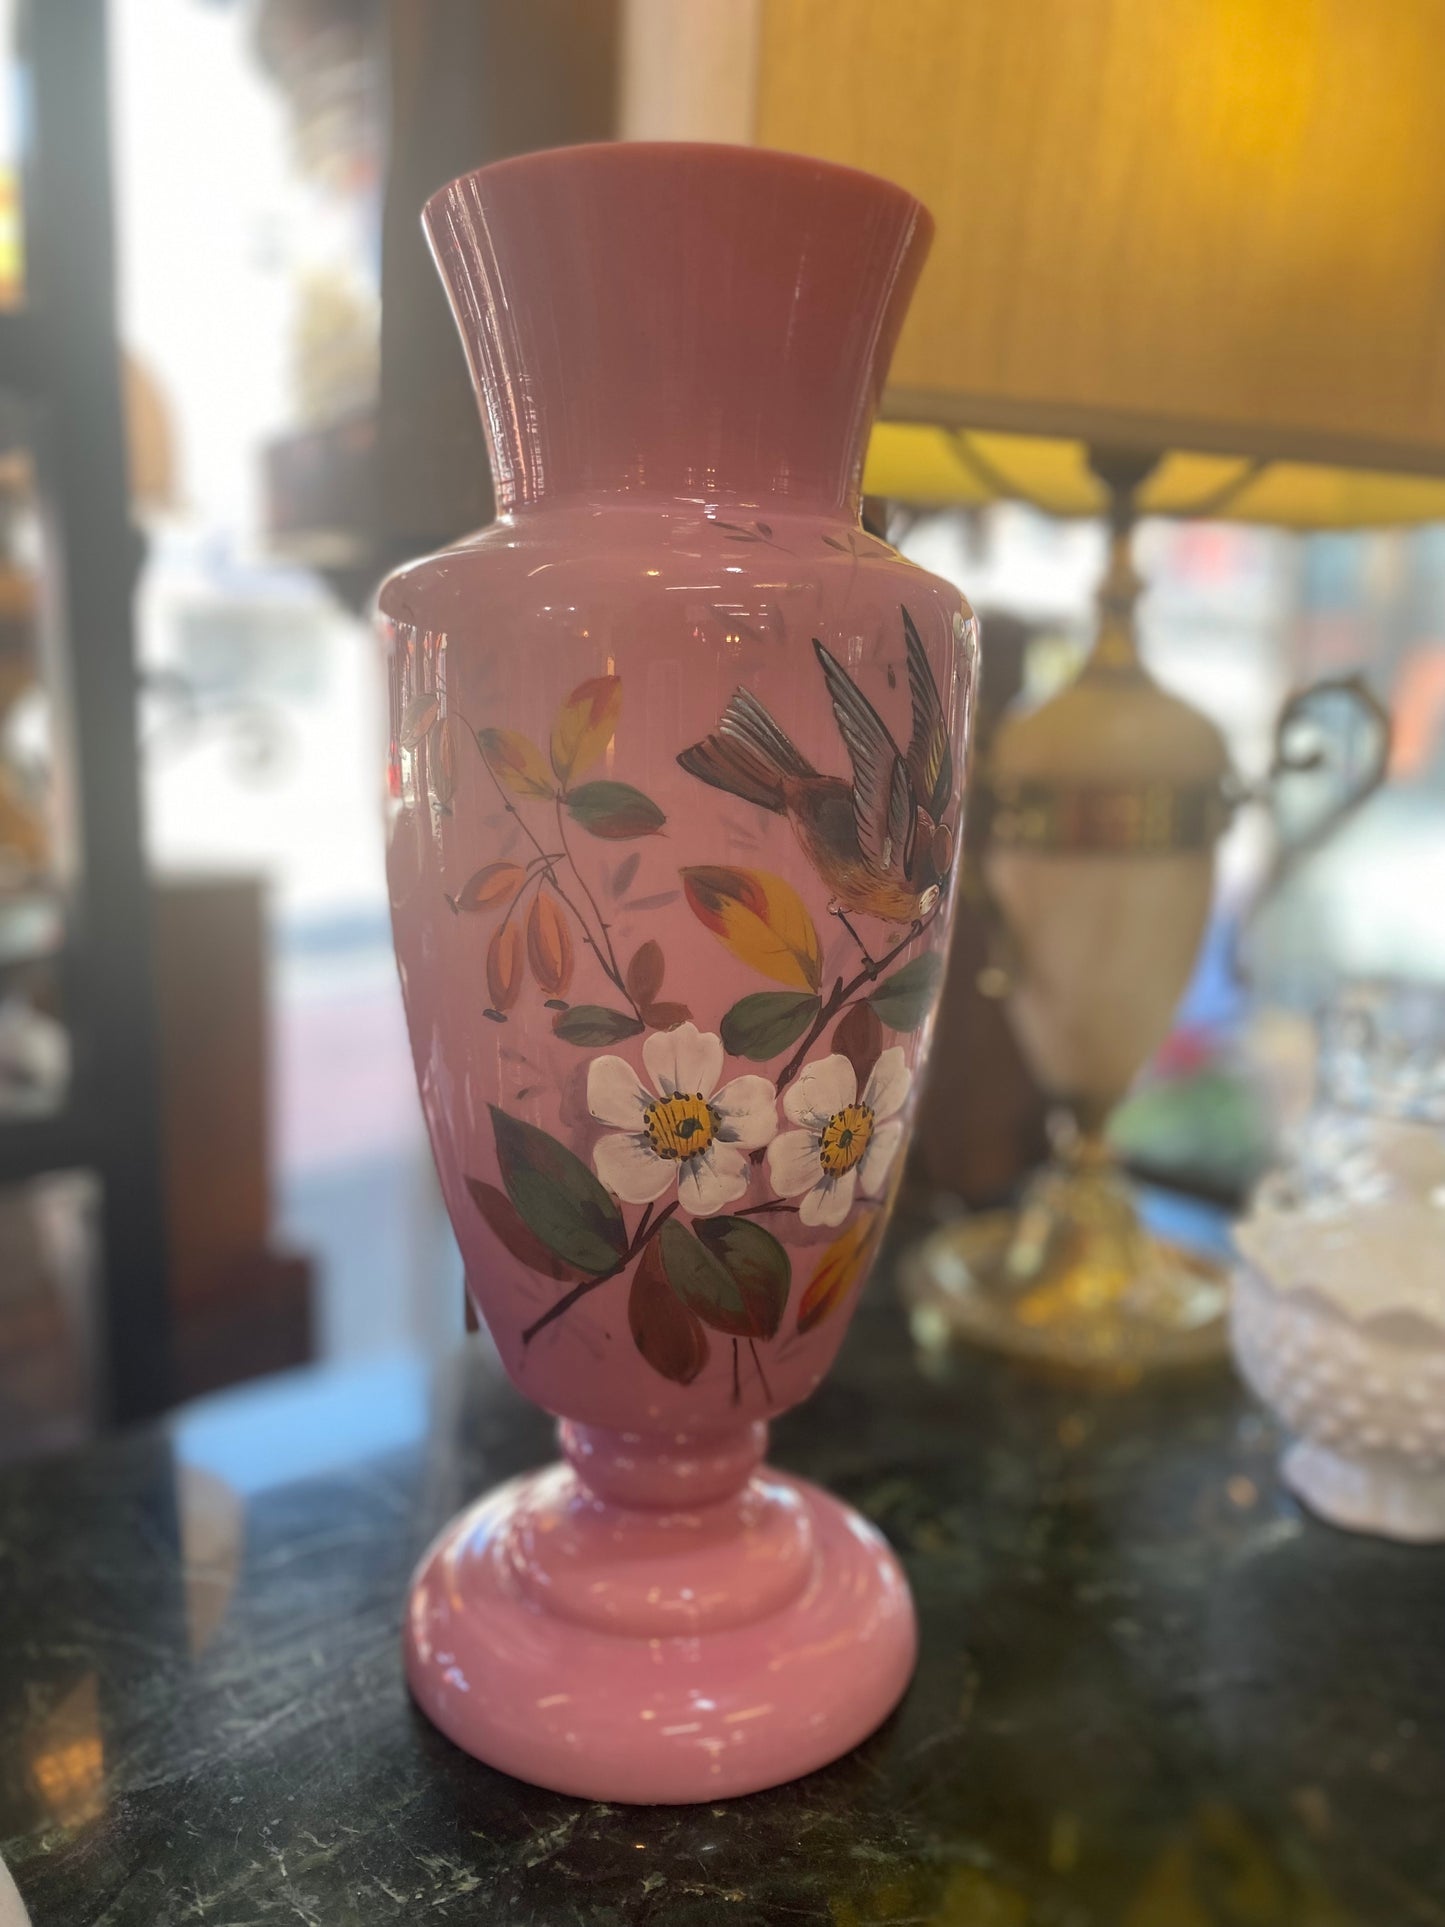 手绘粉红色牛奶，可能是乳白色玻璃维多利亚式壁炉花瓶